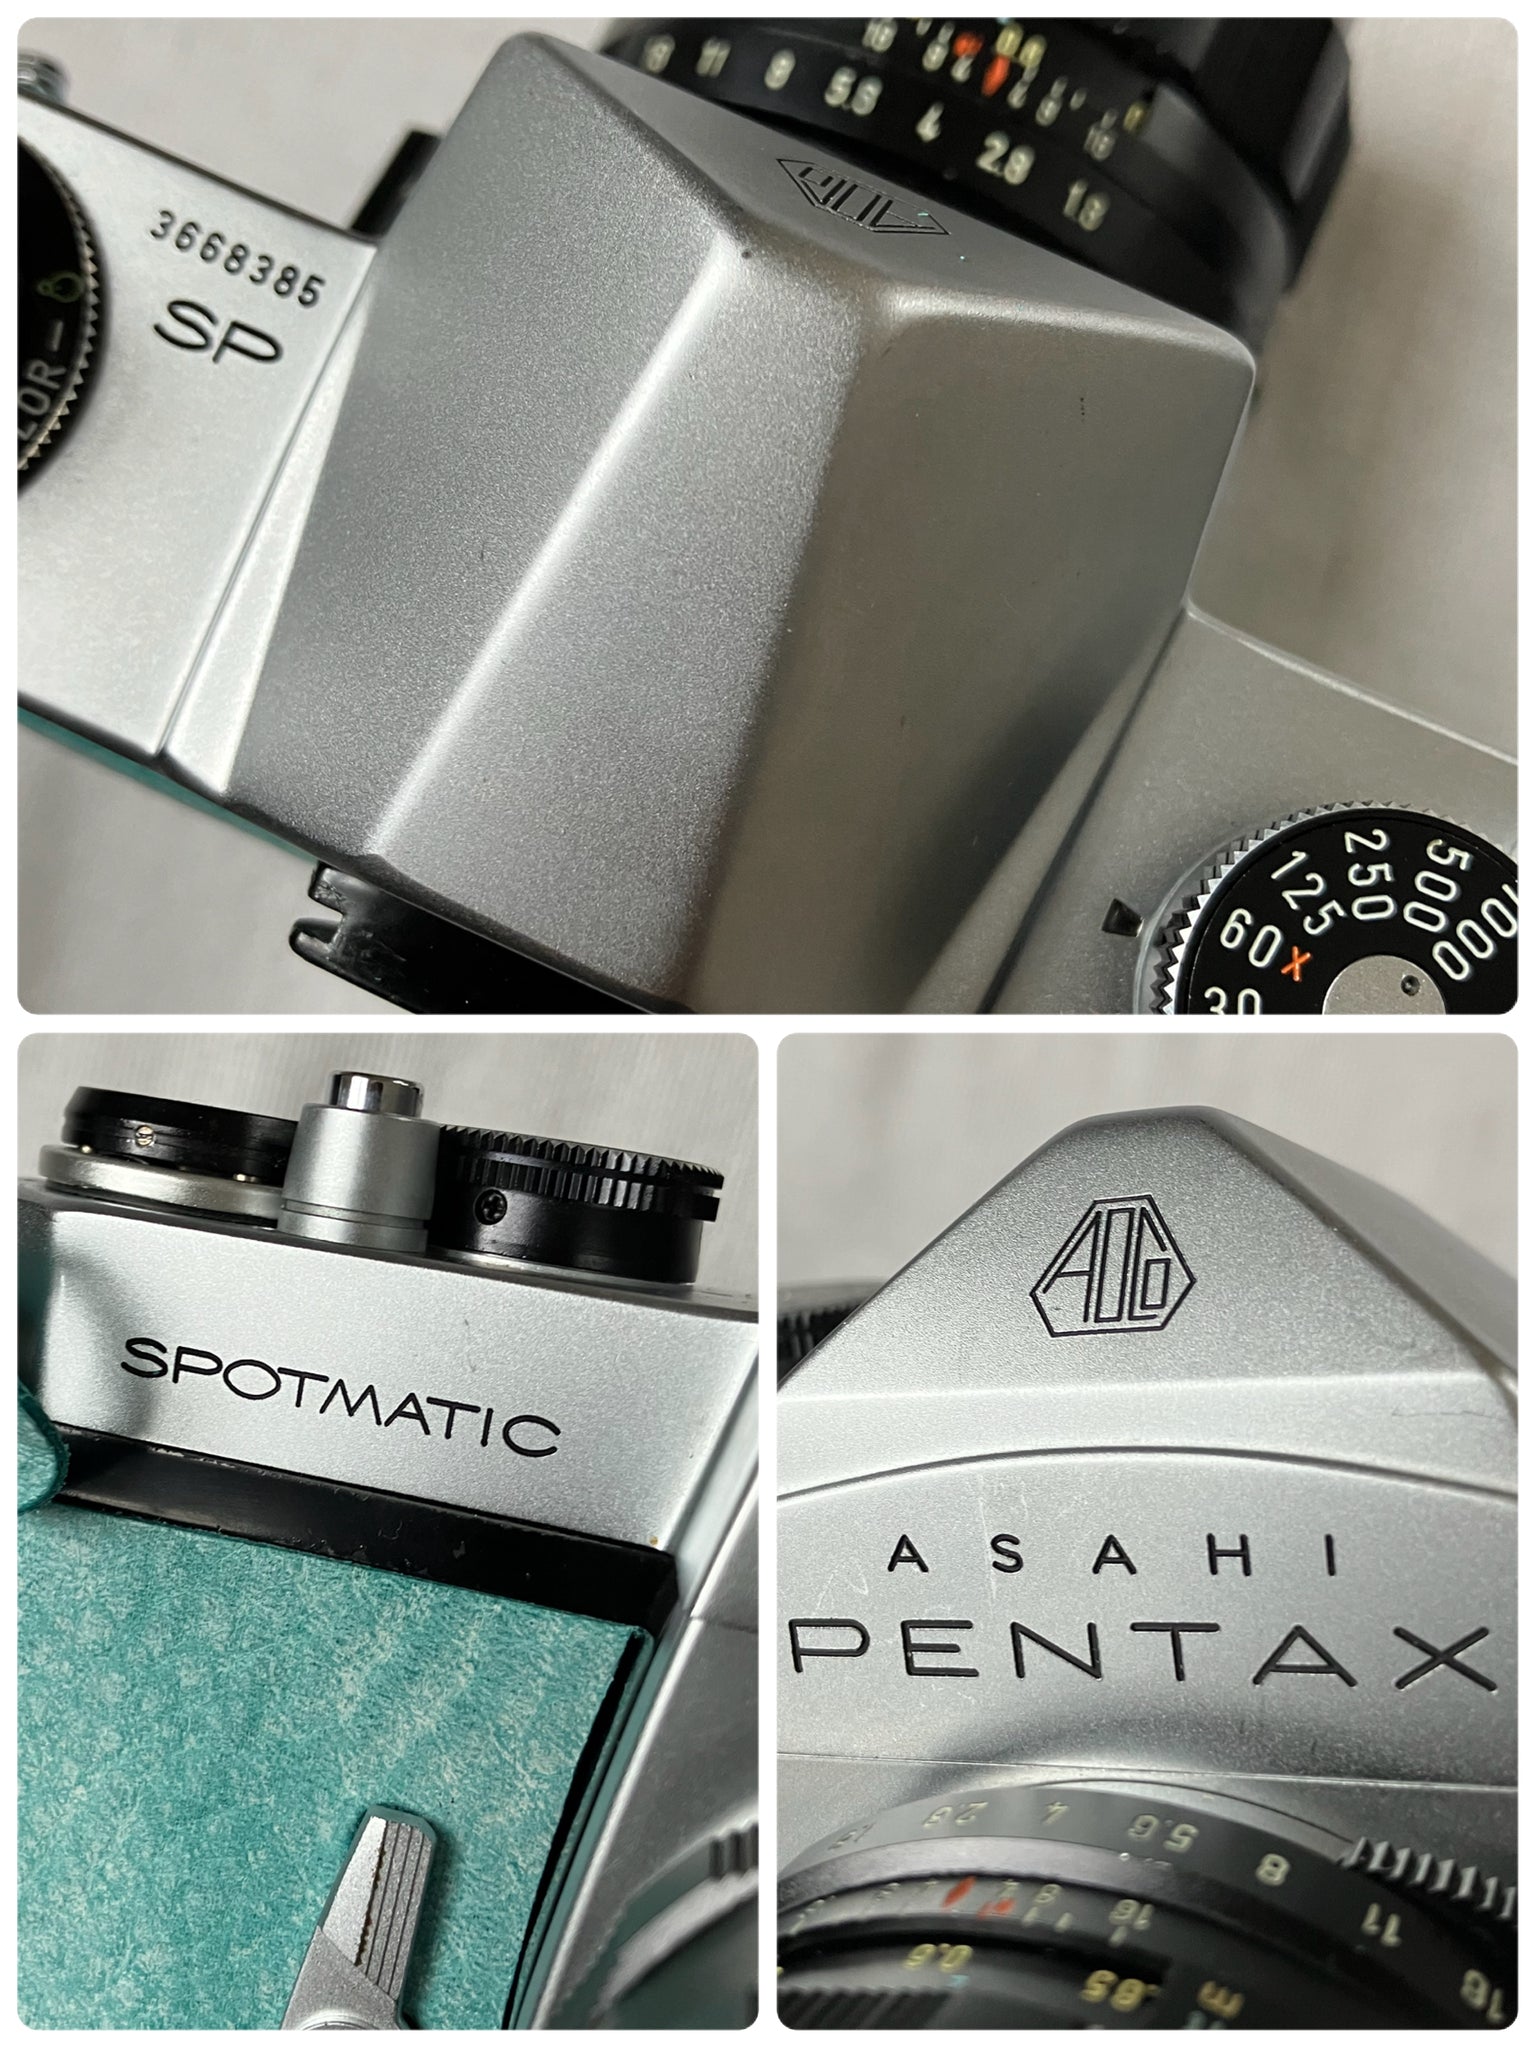 PENTAX SP レンズ付き 完動品 各種付属品付き - フィルムカメラ